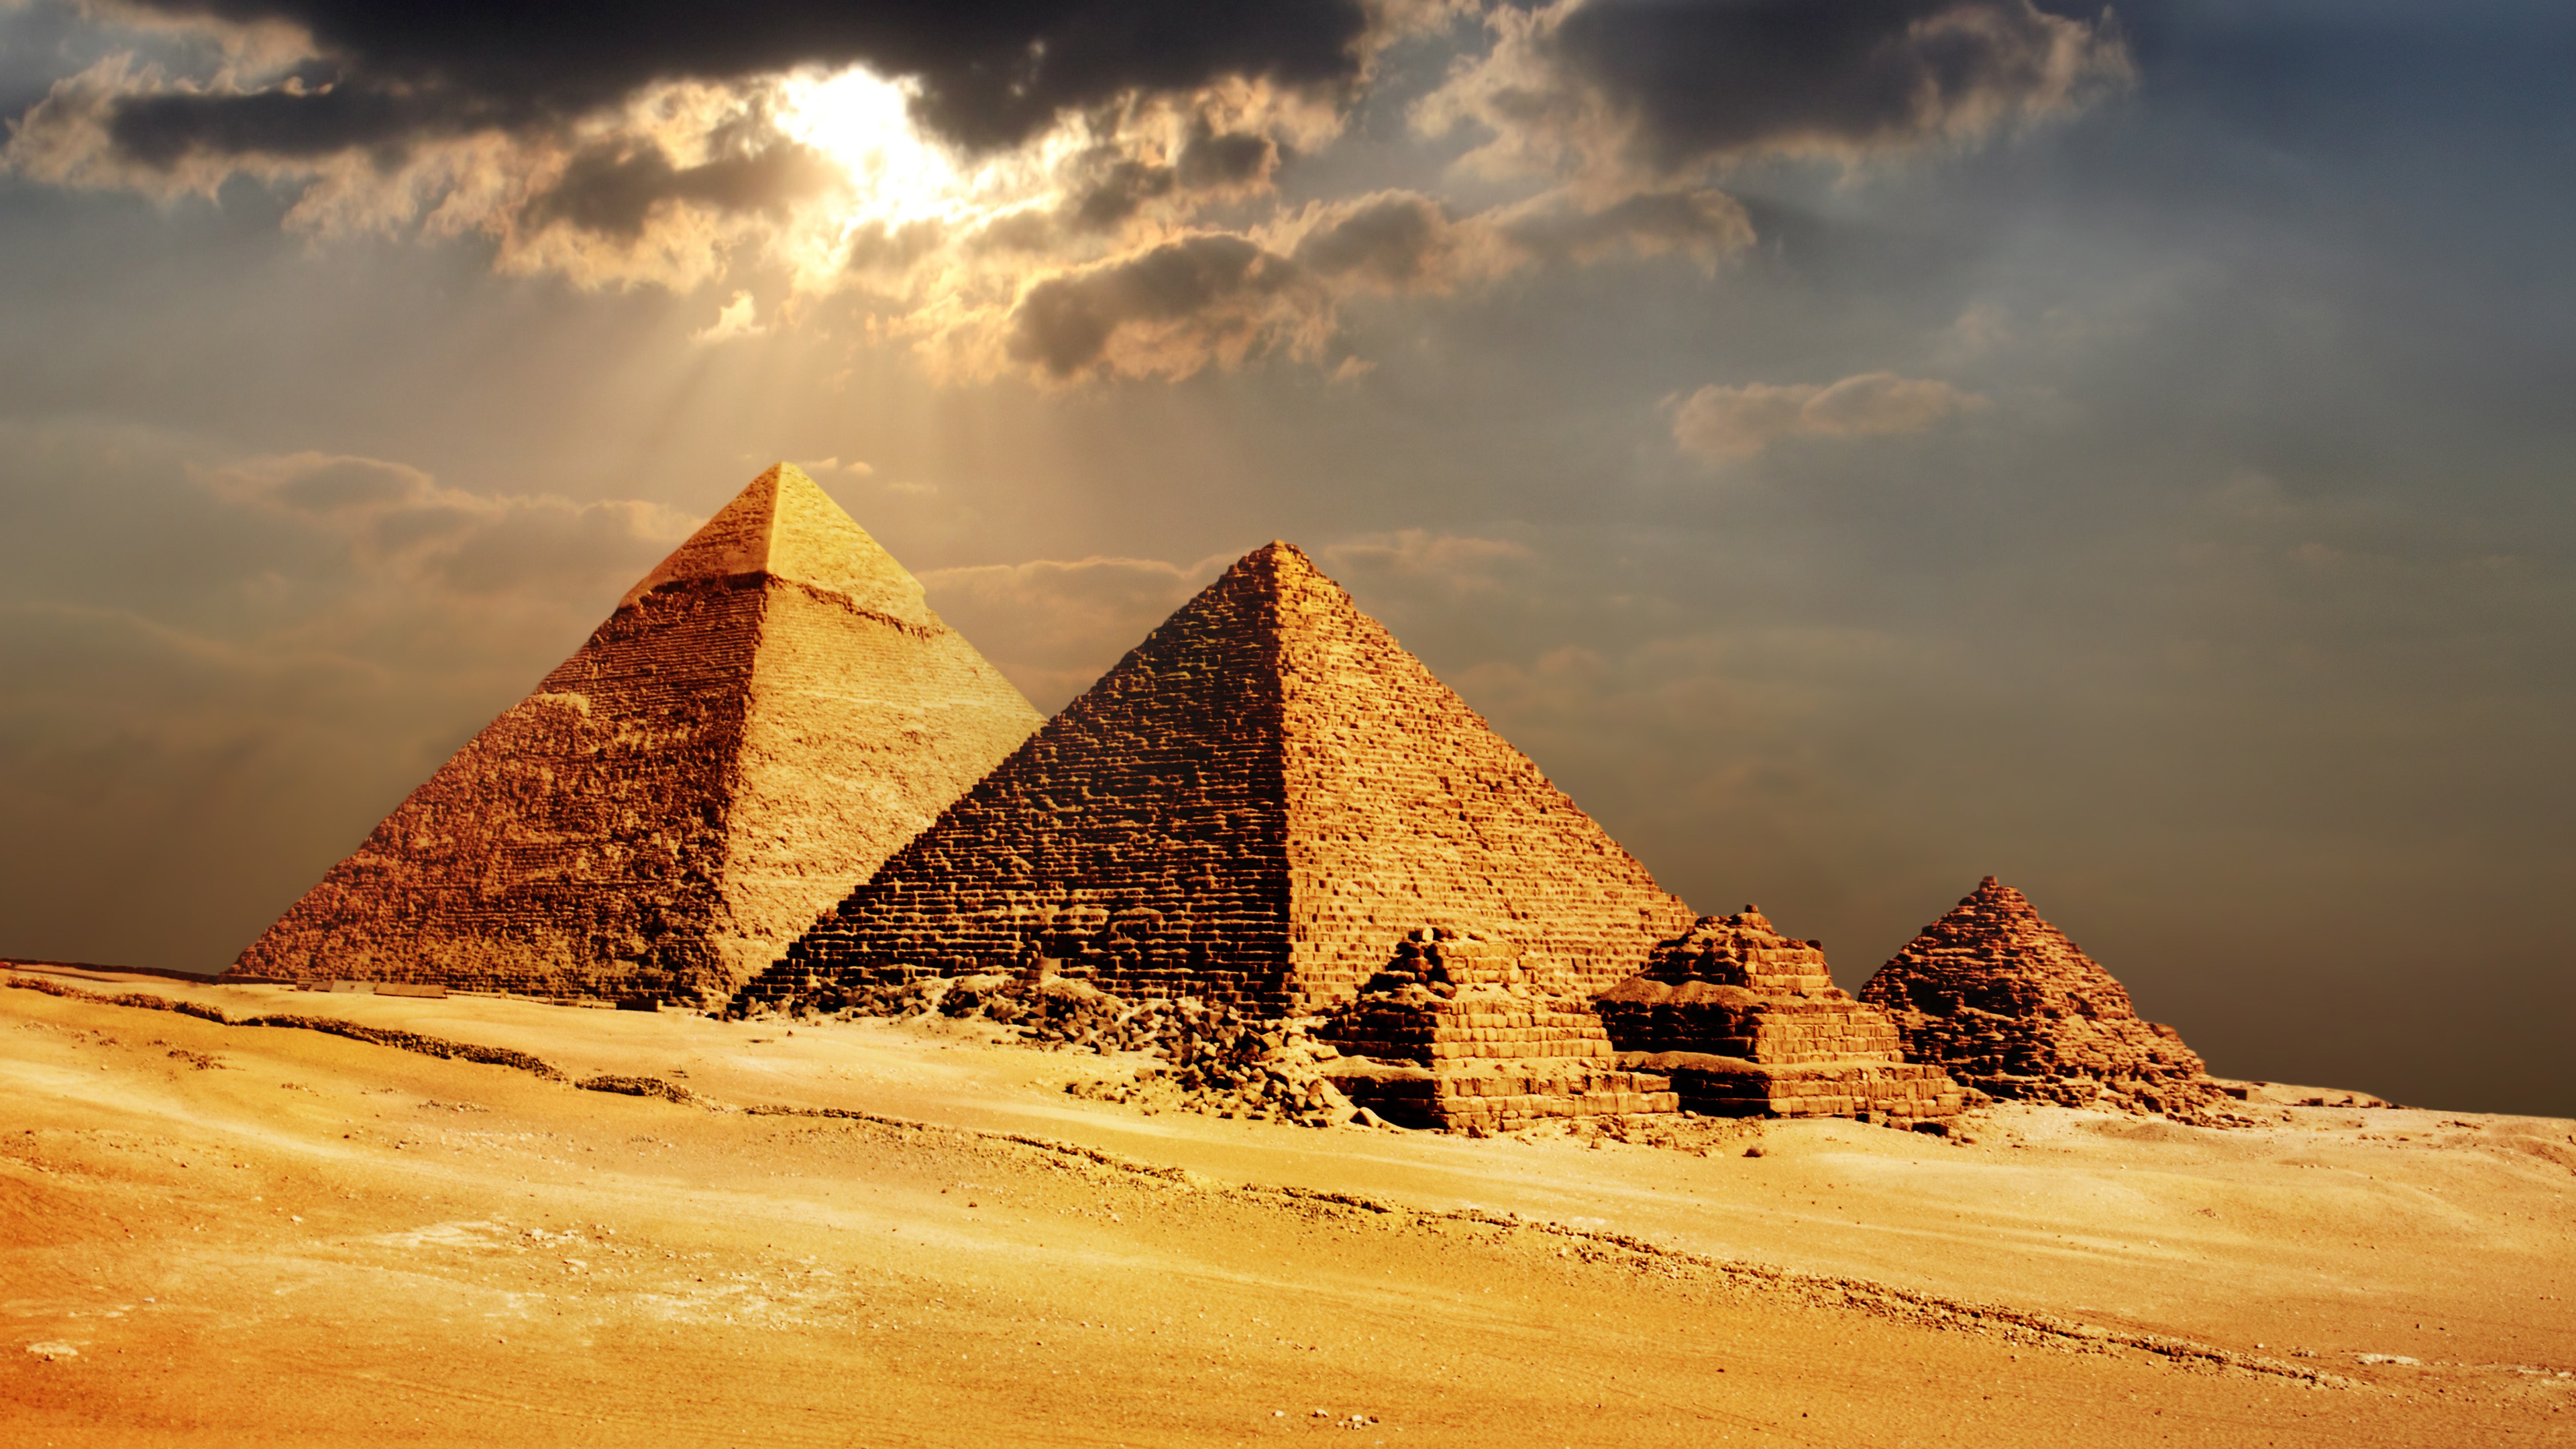 埃及金字塔, 金字塔, 纪念碑, 古代历史, 历史站 壁纸 3840x2160 允许